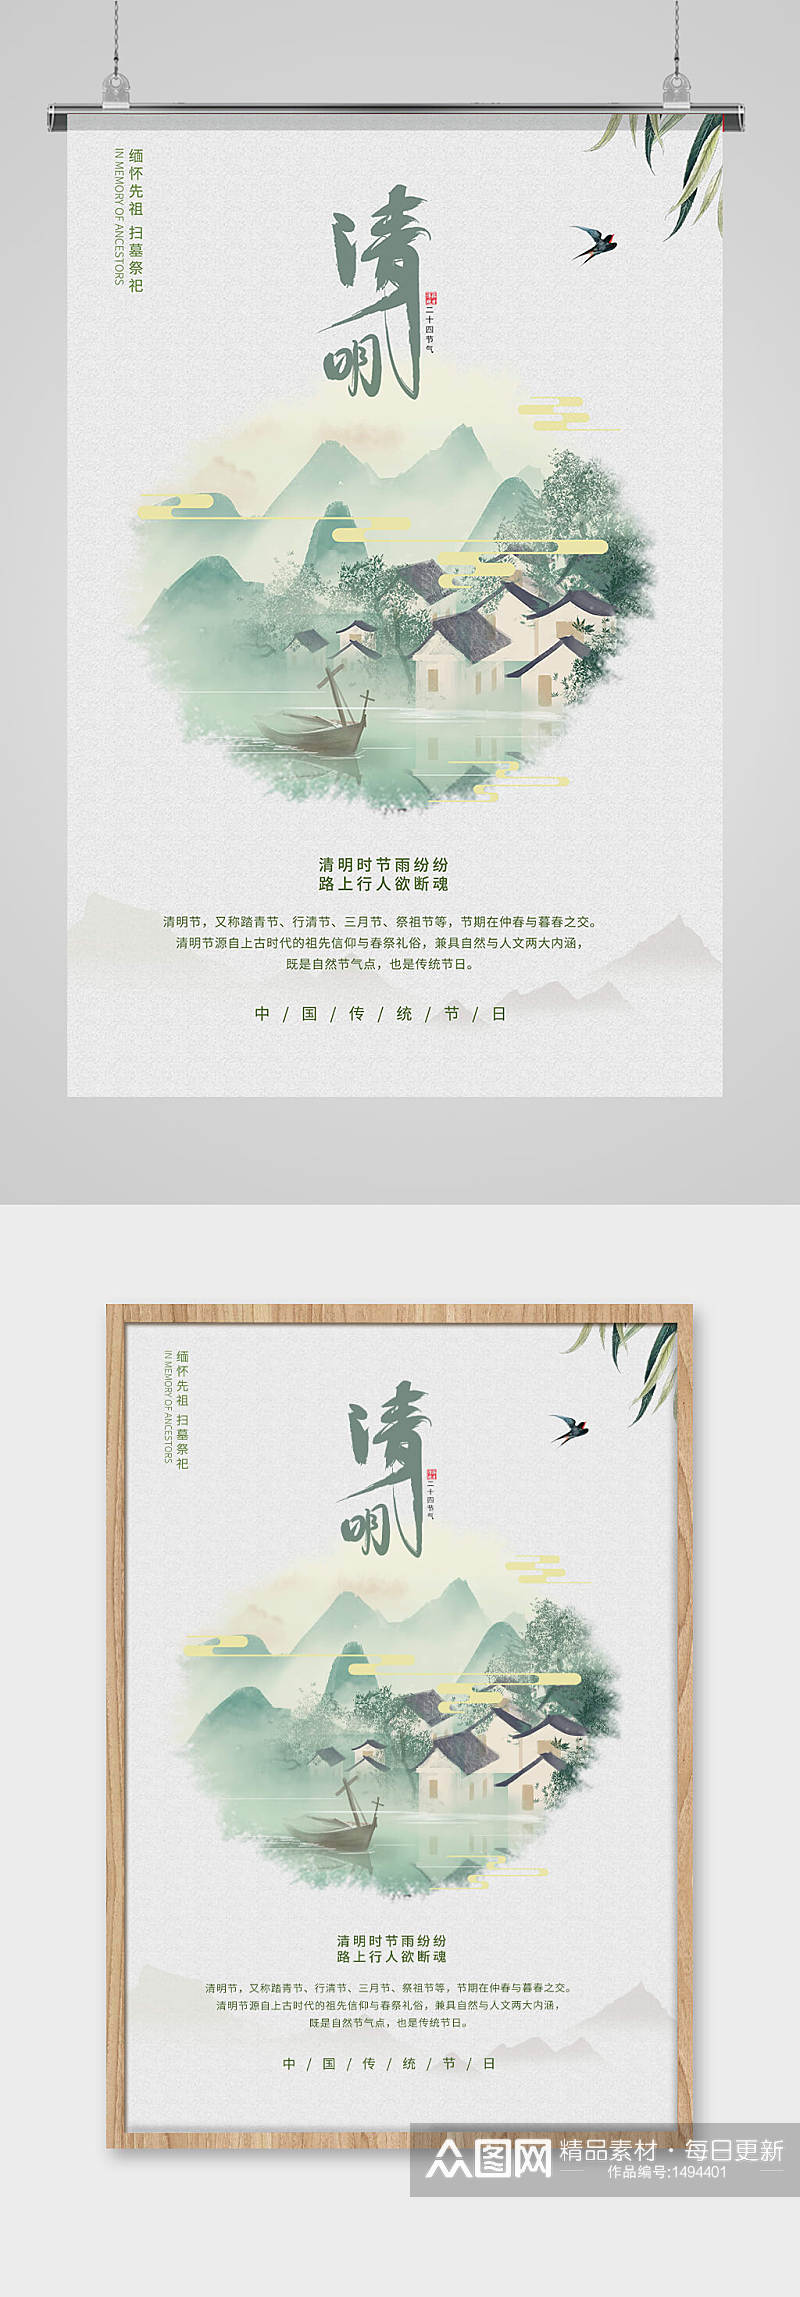 简约清新白绿中国风格清明节活动宣传海报素材